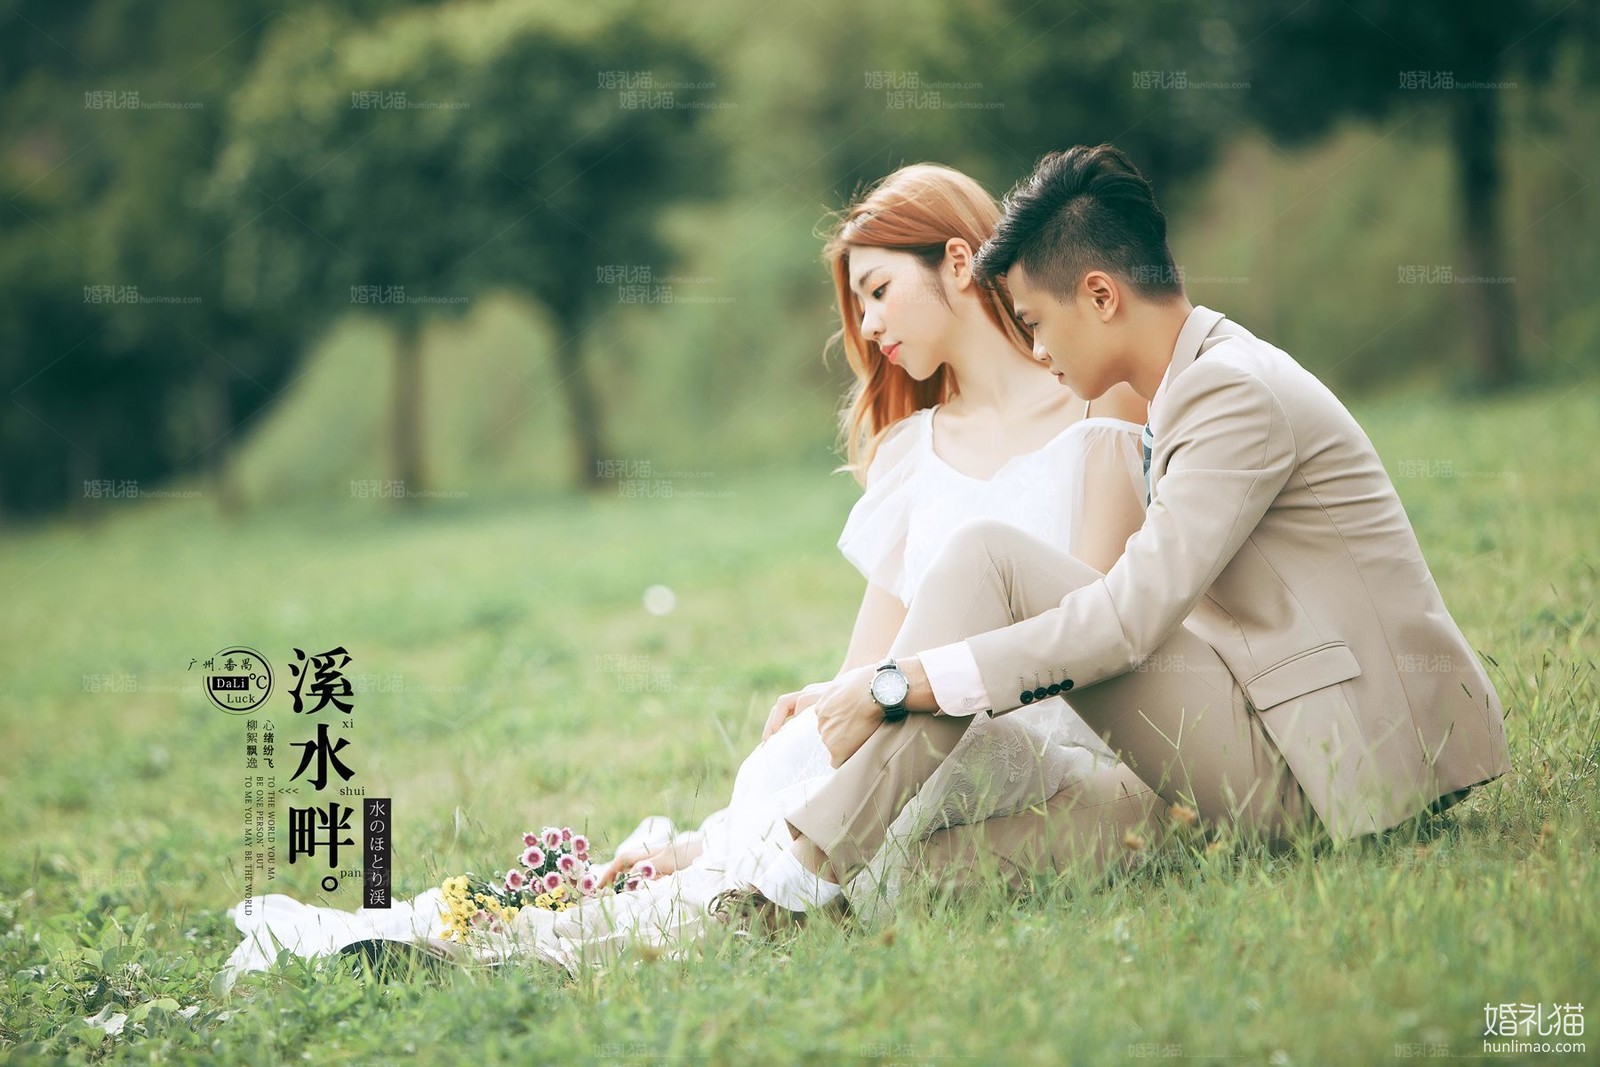 2017年7月广州婚纱摄影,,茂名婚纱照,婚纱照图片